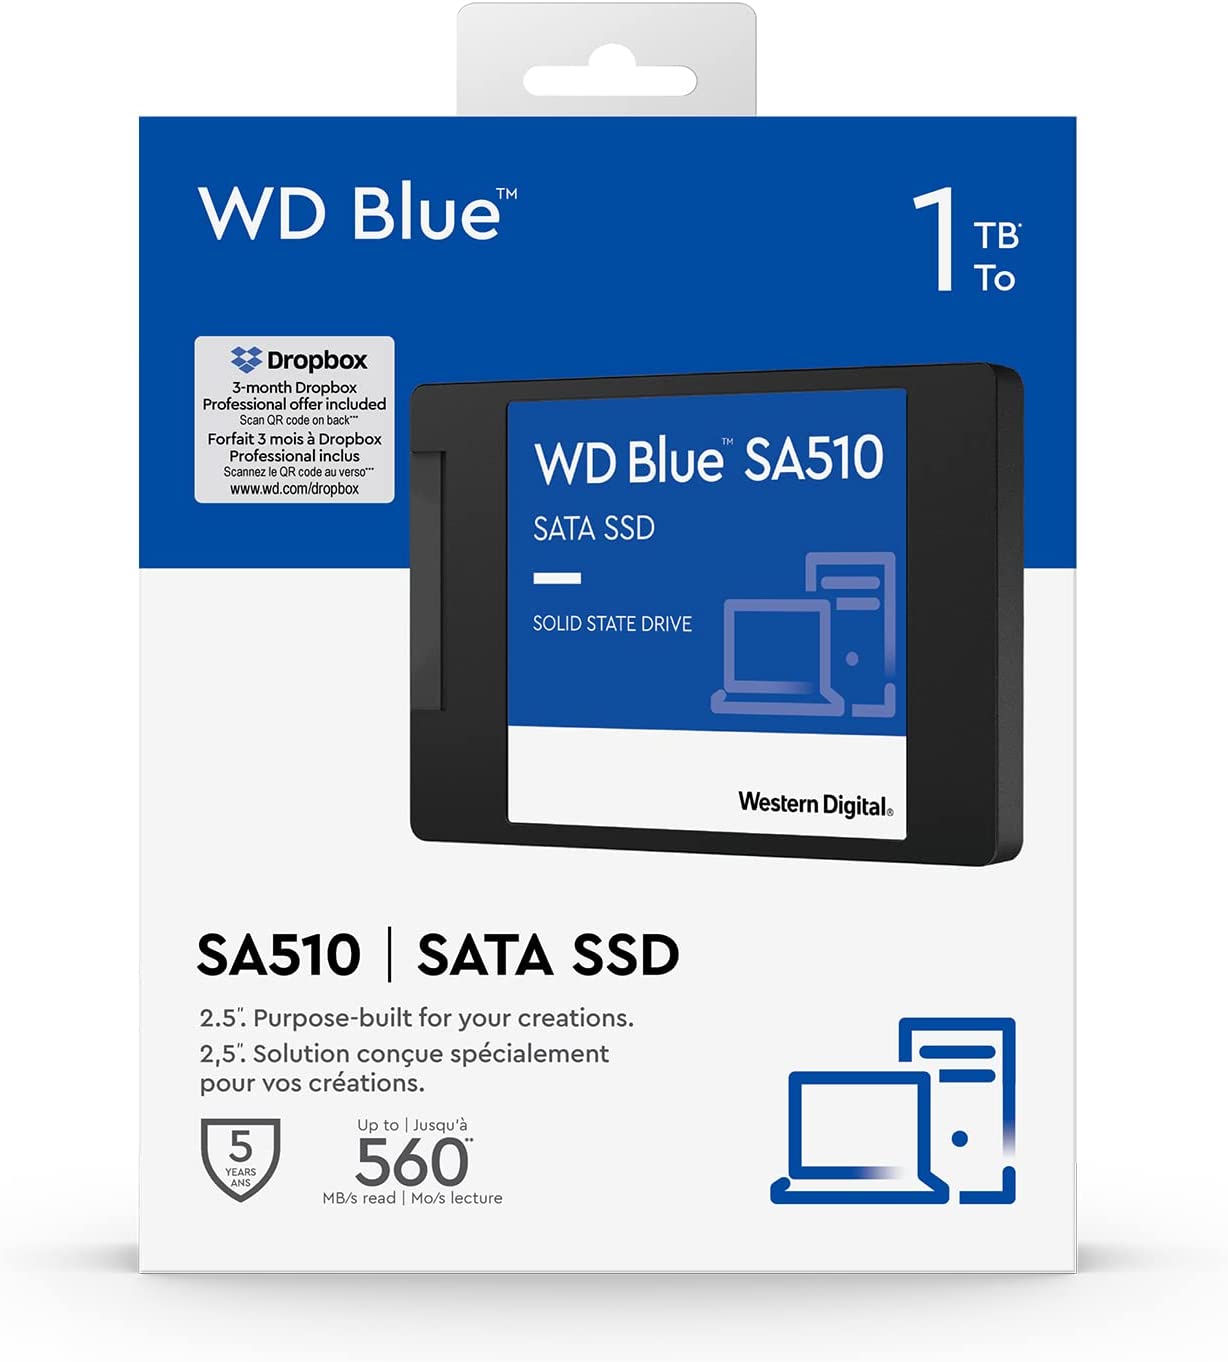 Western Digital 1TB WD Blue SA510 SATA Internal Solid State Drive SSD - SATA III 6 Gb/s, 2.5"/7mm, Up to 560 MB/s - WDS100T3B0A 1TB New Generation